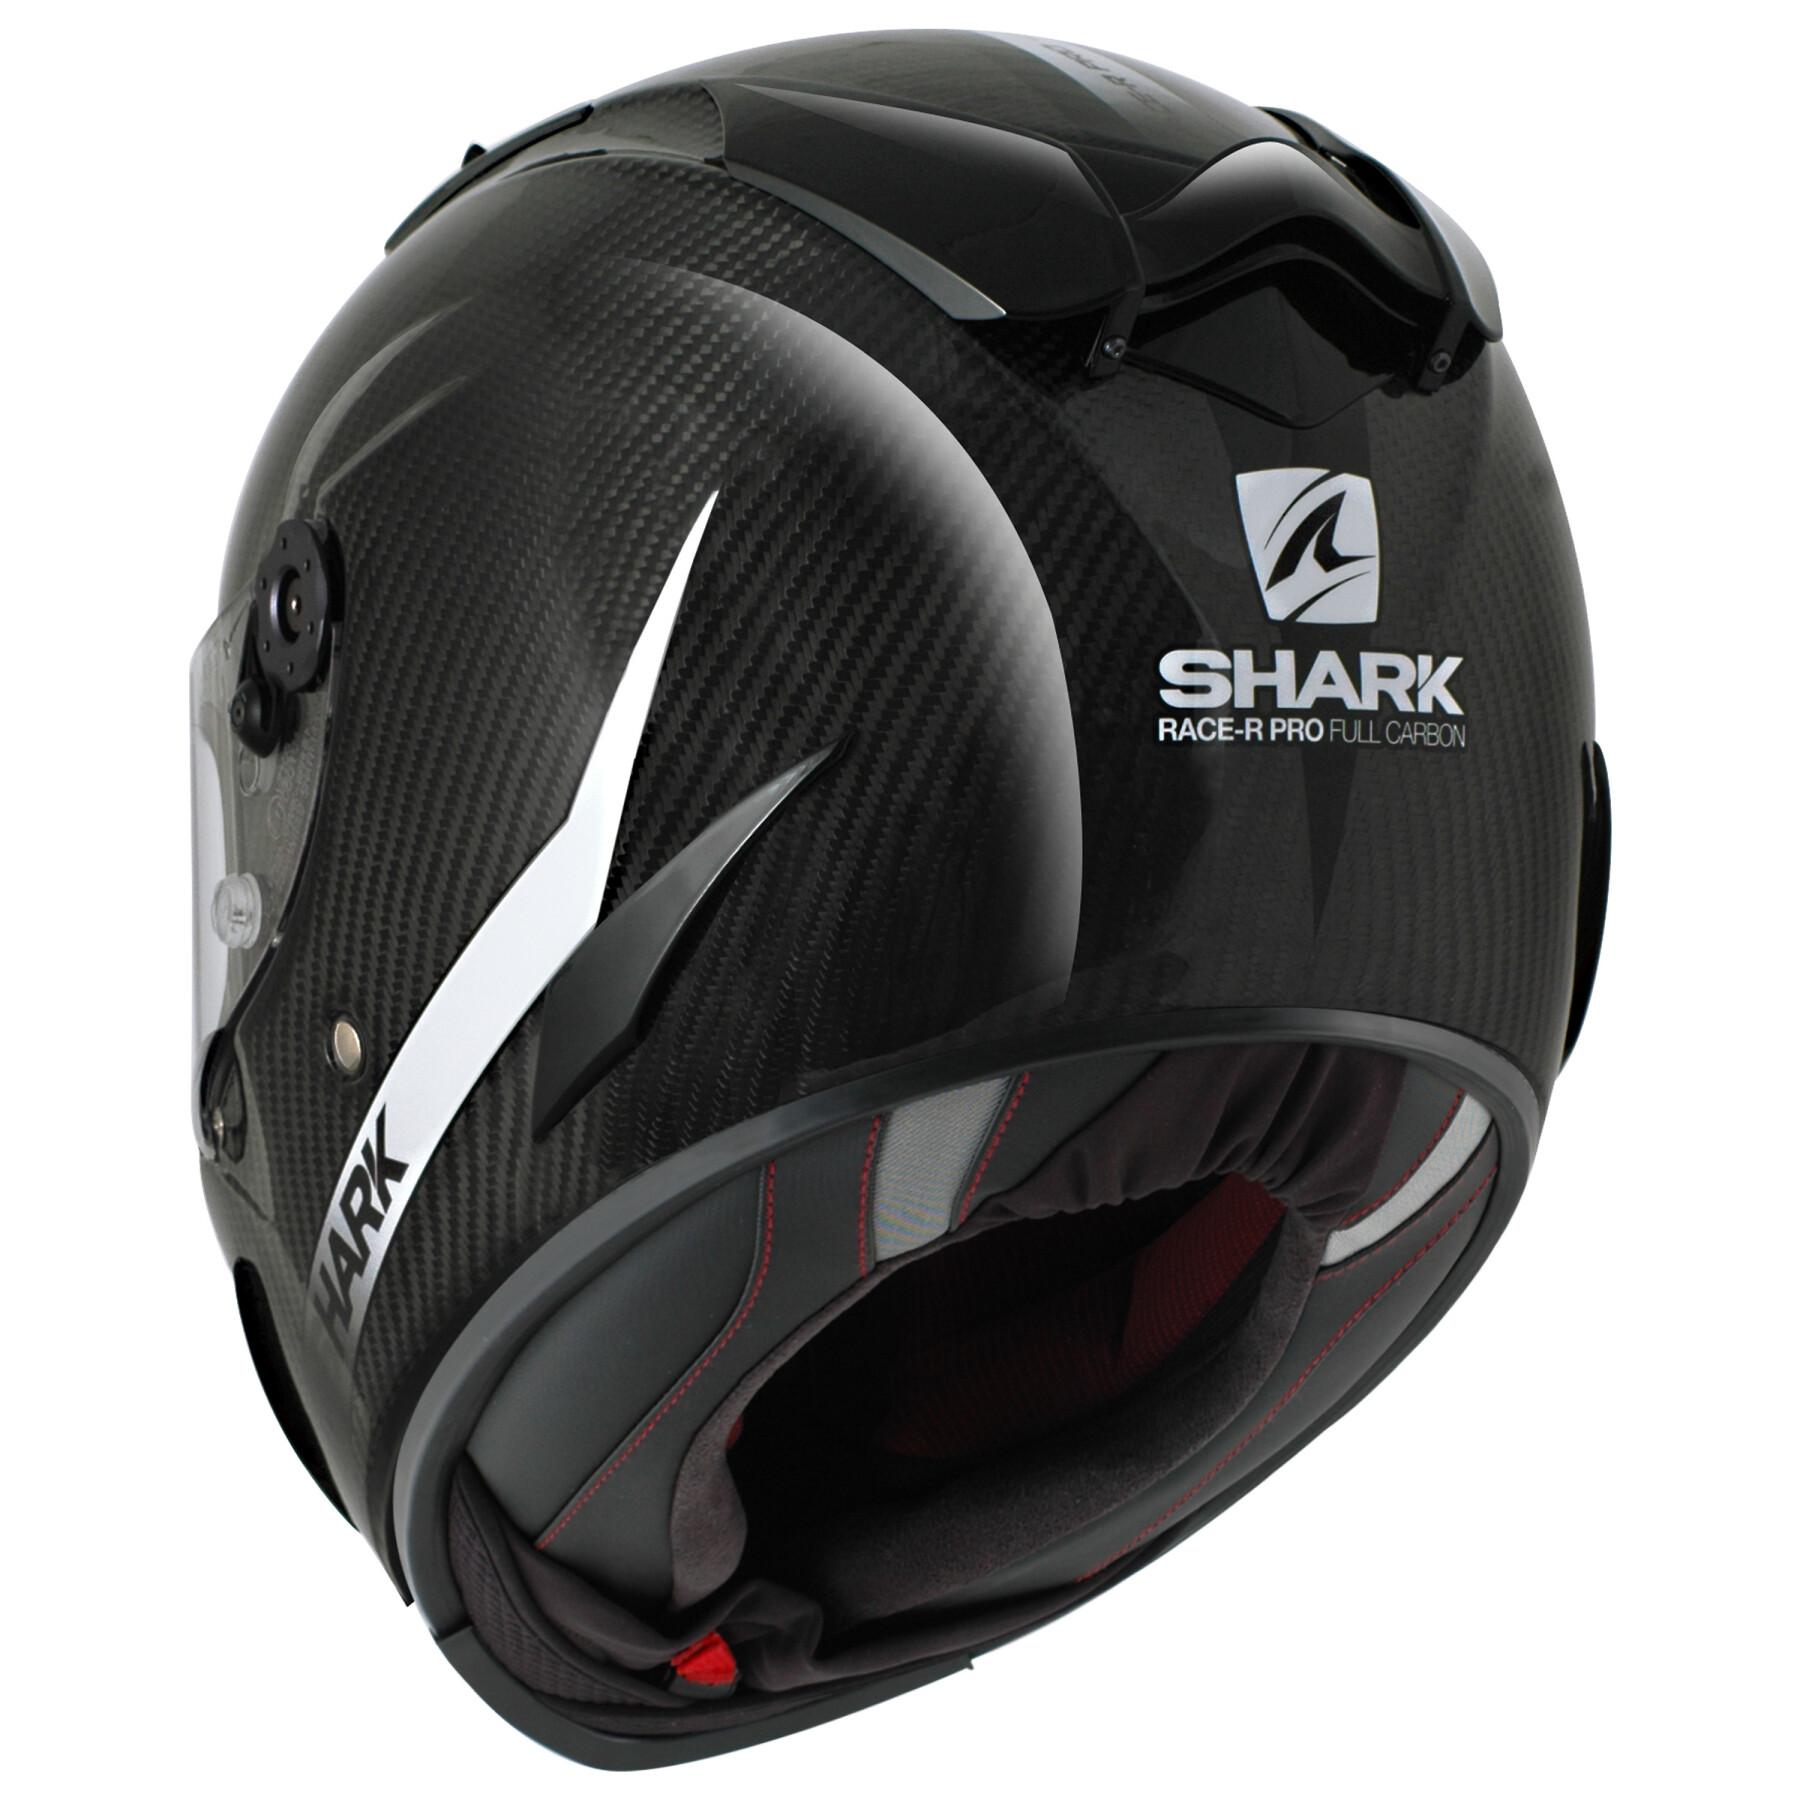 Full face motorcycle helmet Shark race-r pro carbon skin